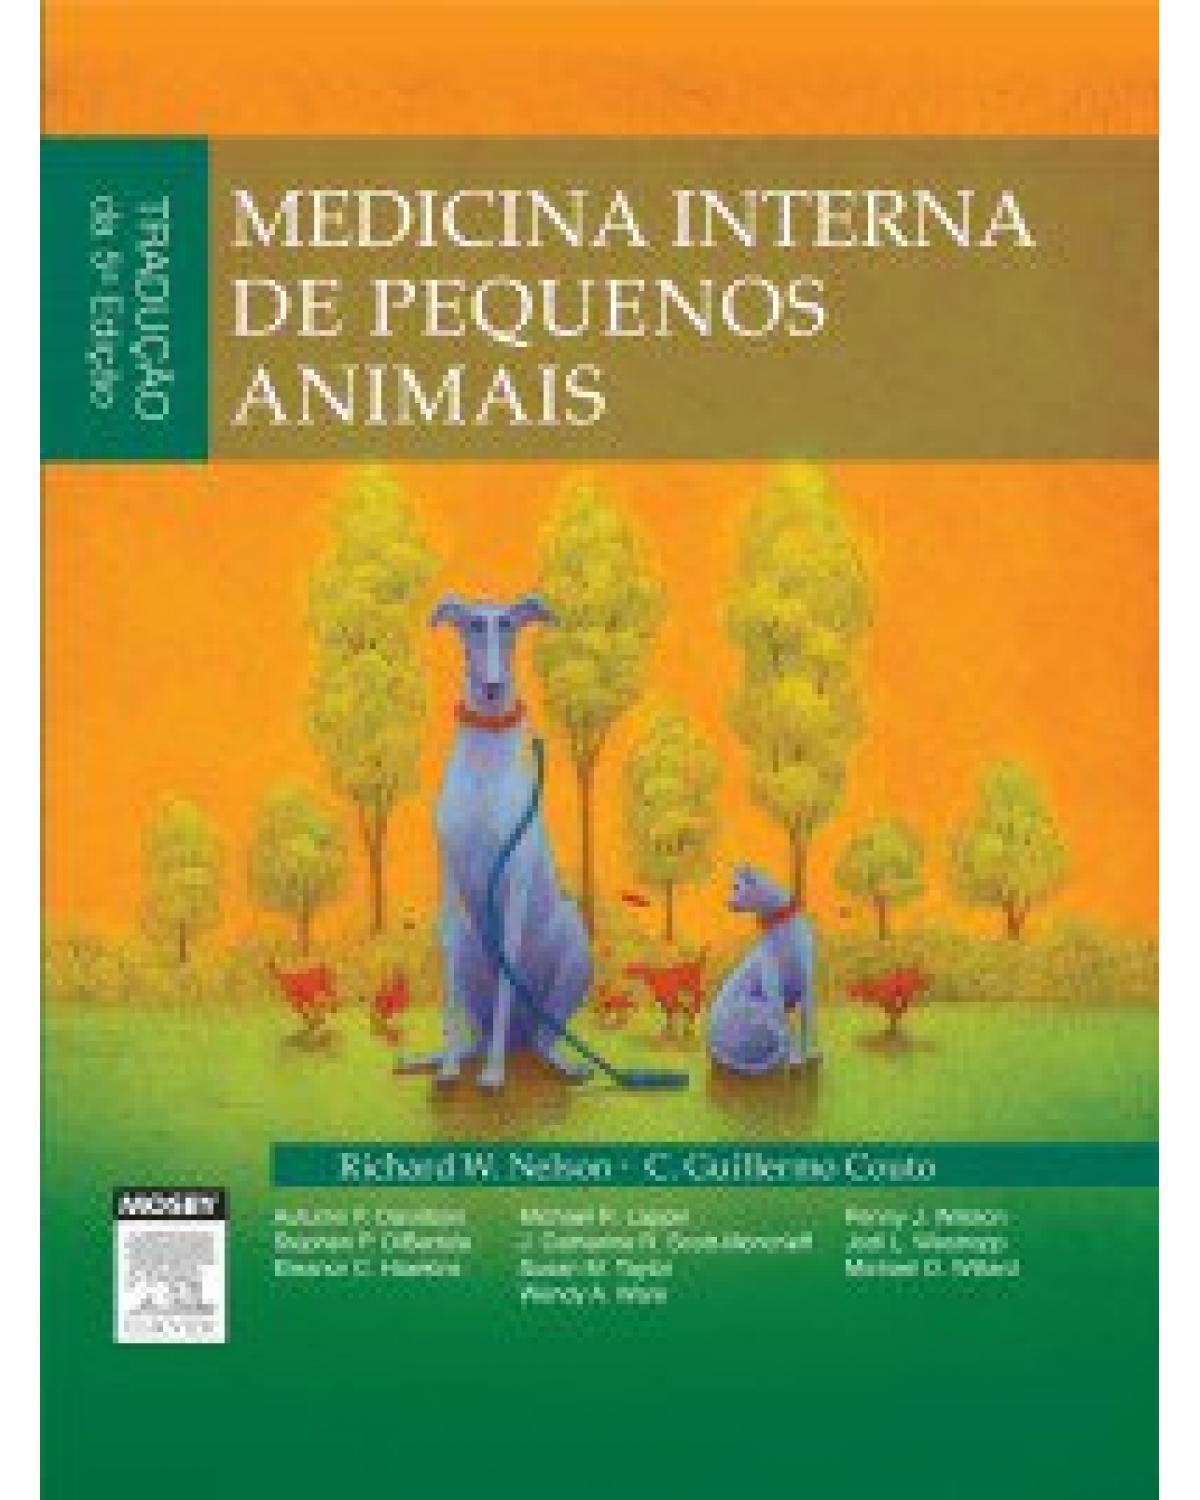 Medicina interna de pequenos animais - 5ª Edição | 2015